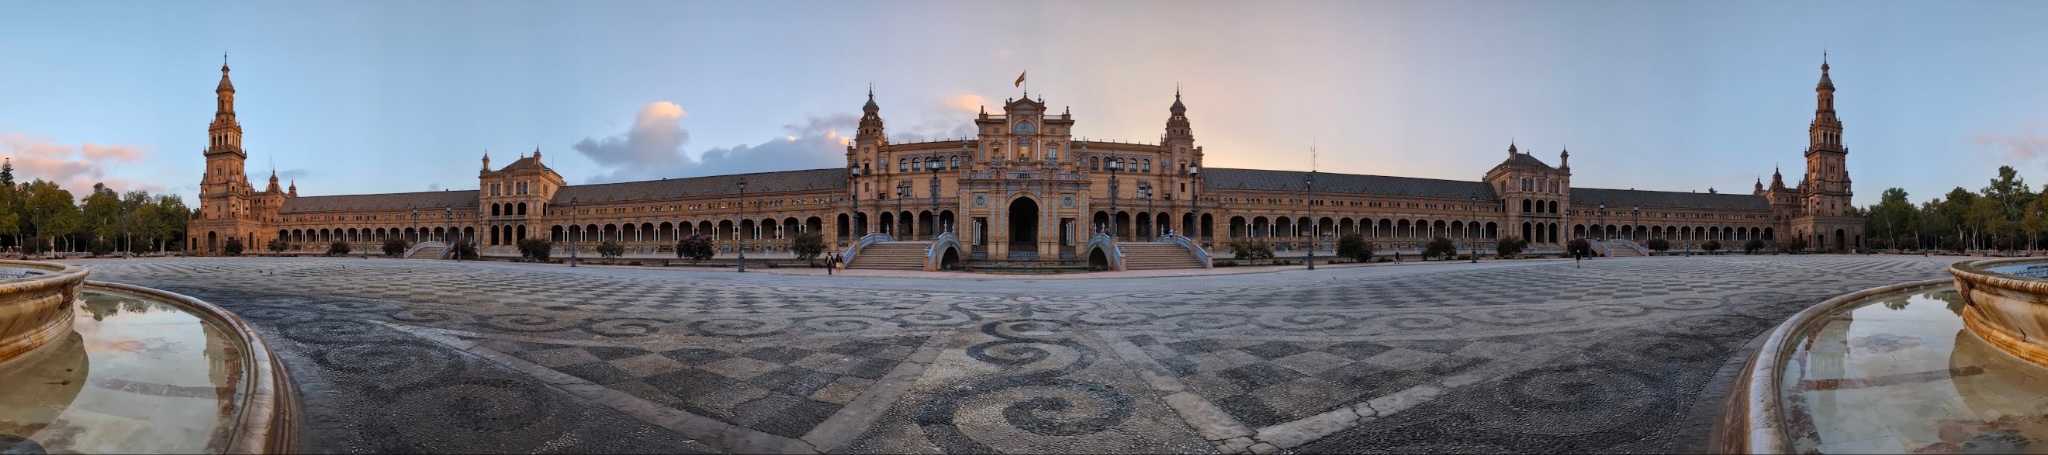 Panorama of Plaza de España.